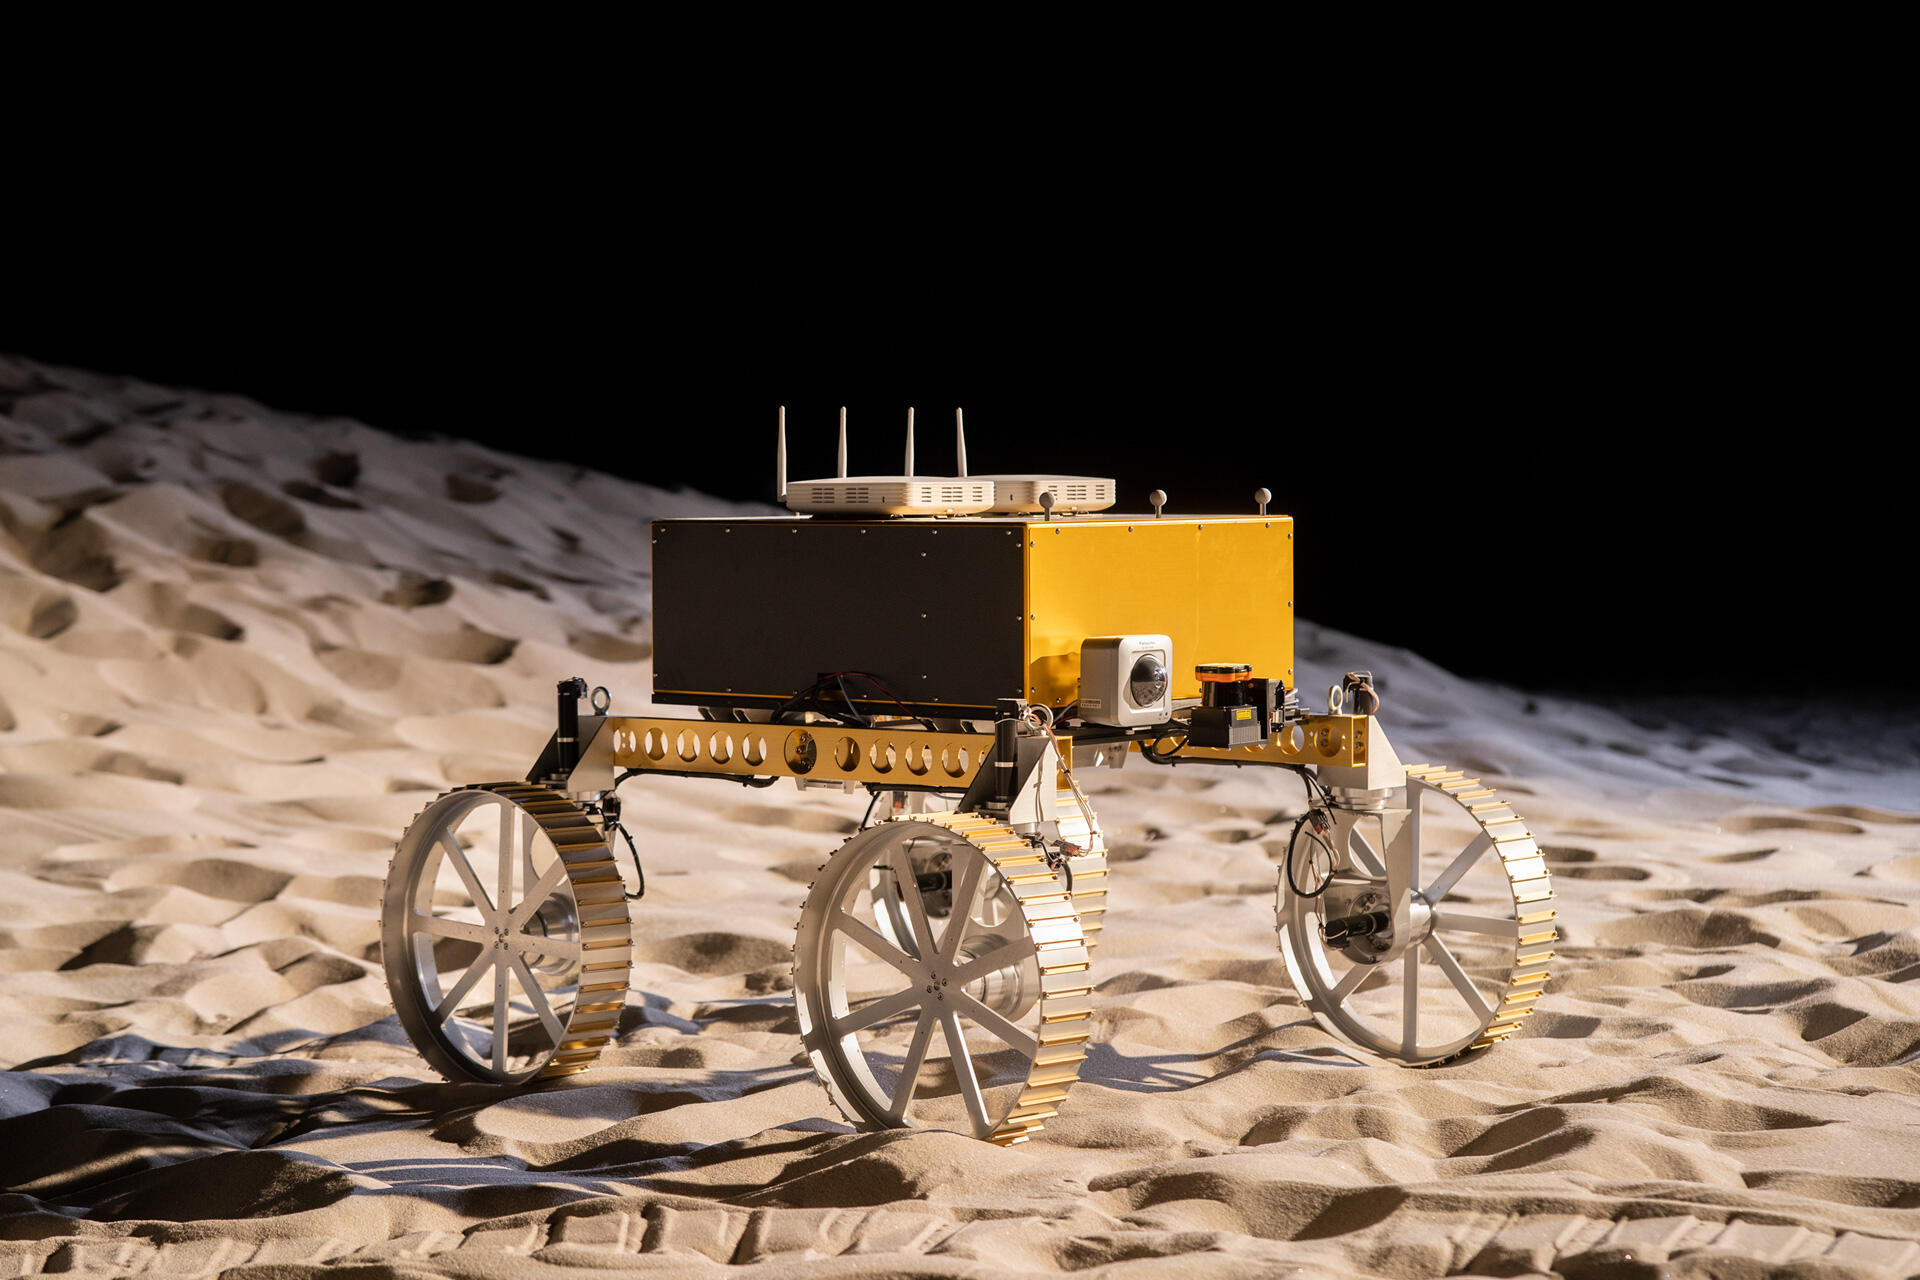 月や火星などの基地建設で必要となる建設機械の遠隔操作や自動運転の技術を研究するためのローバ。